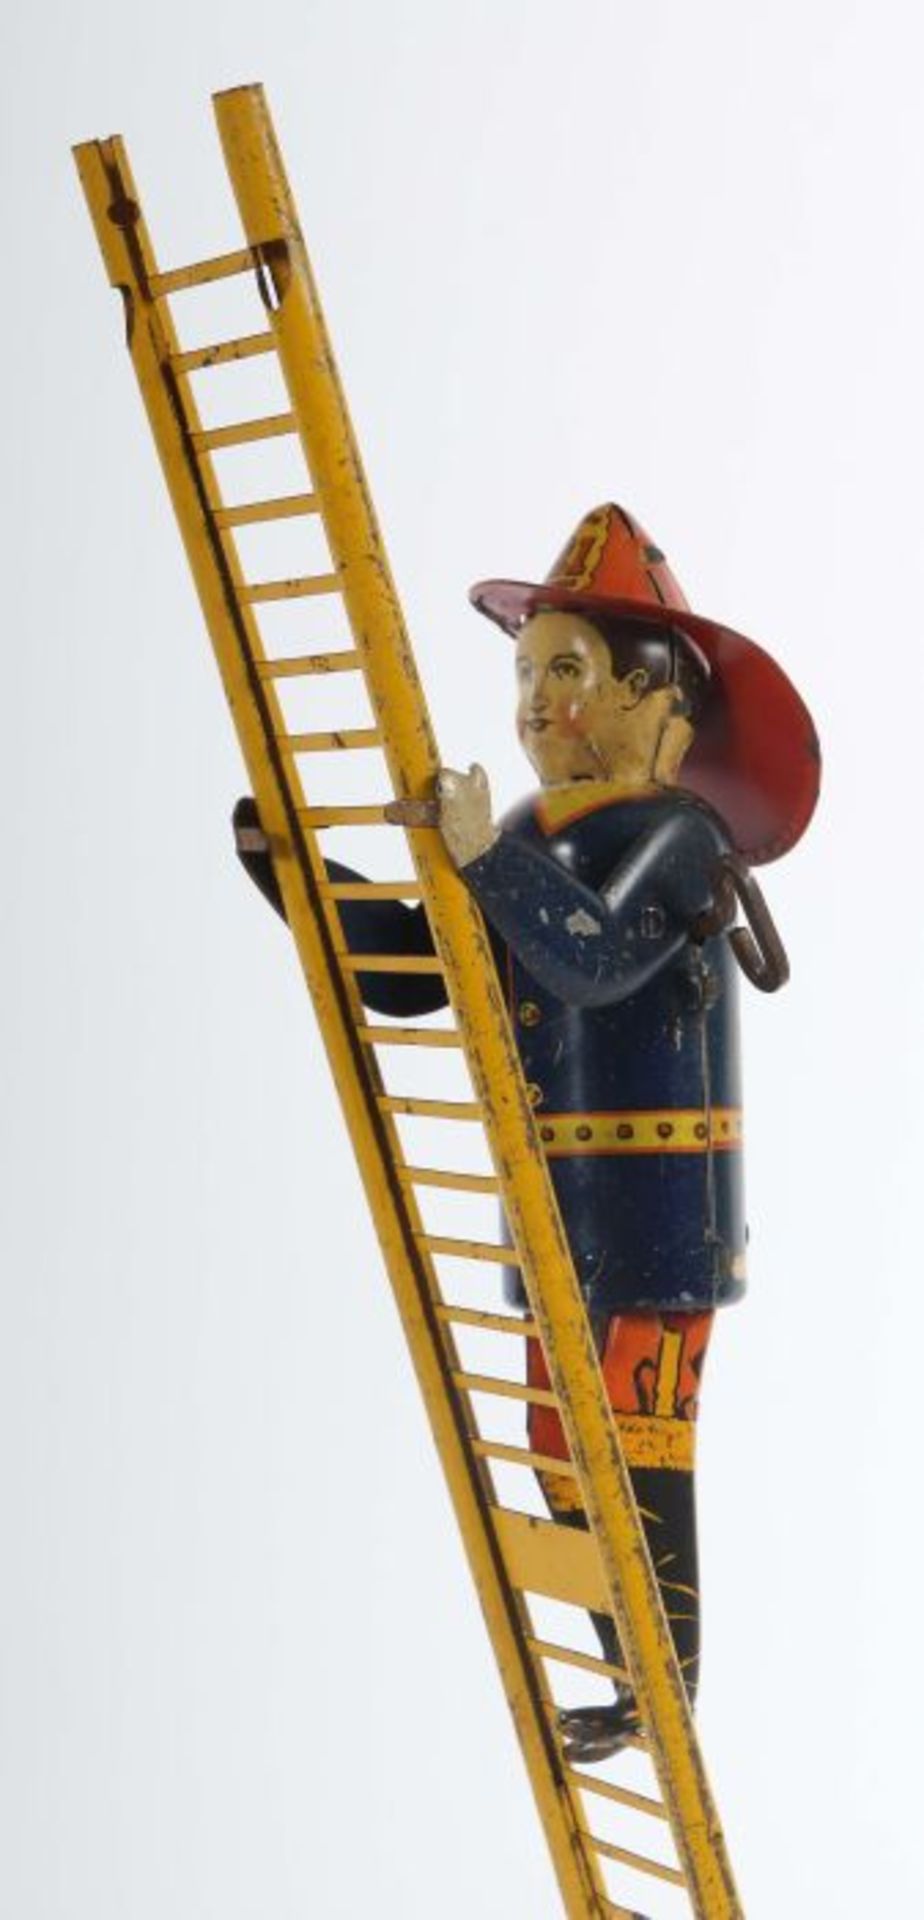 Amerikanischer FeuerwehrmannLouis Marx & Co. NY. USA, "Fireman ladder", Blech lithografiert, - Bild 3 aus 3